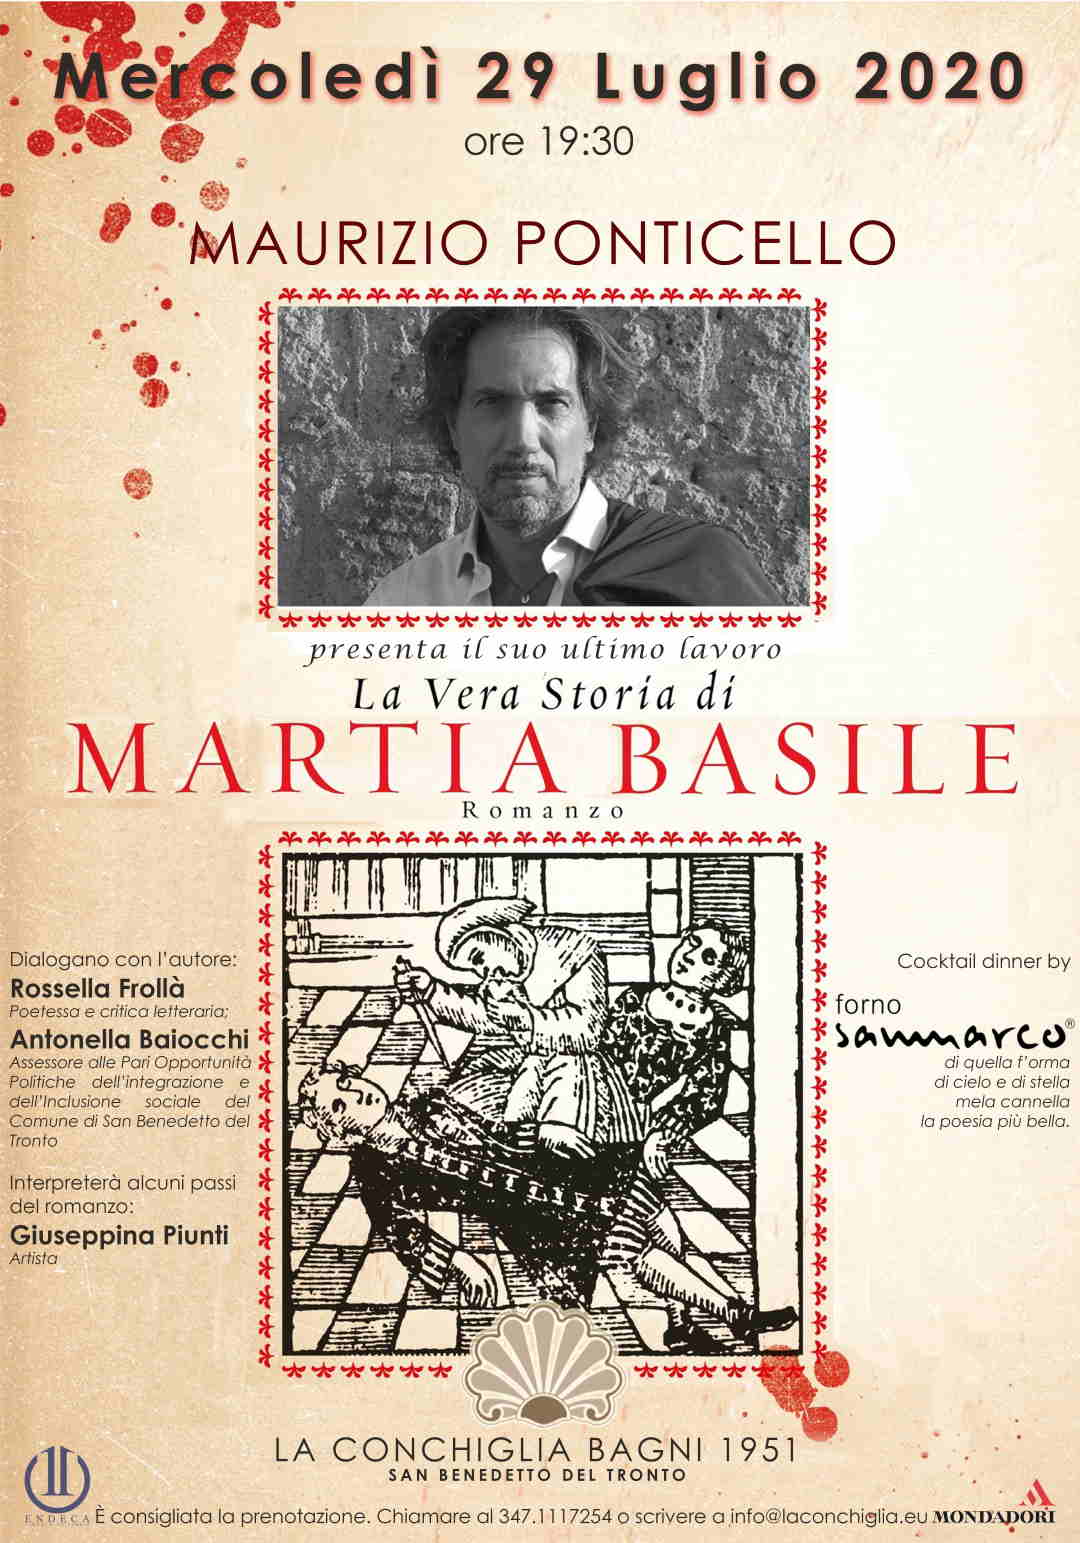 Maurizio Ponticello, “La vera storia di Martia Basile” @ La Conchiglia